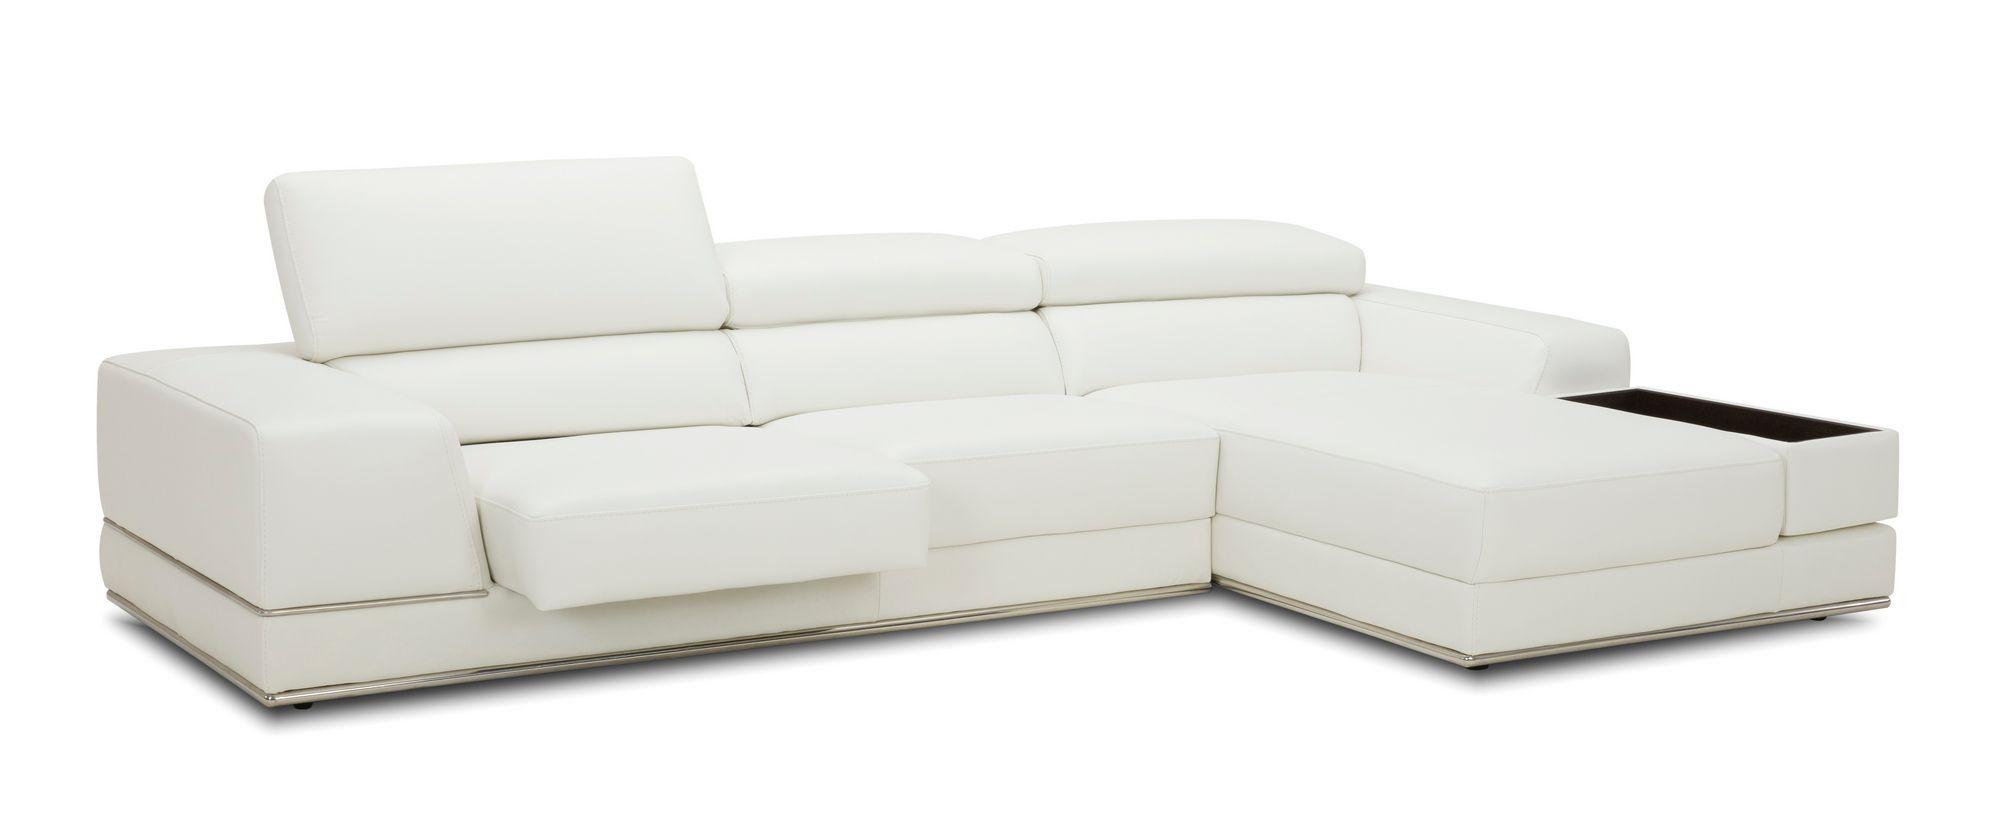 Contemporary, Modern Sectional Sofa VGKK1576-MINI-L2927 VGKK1576-MINI-L2927 in White Leather